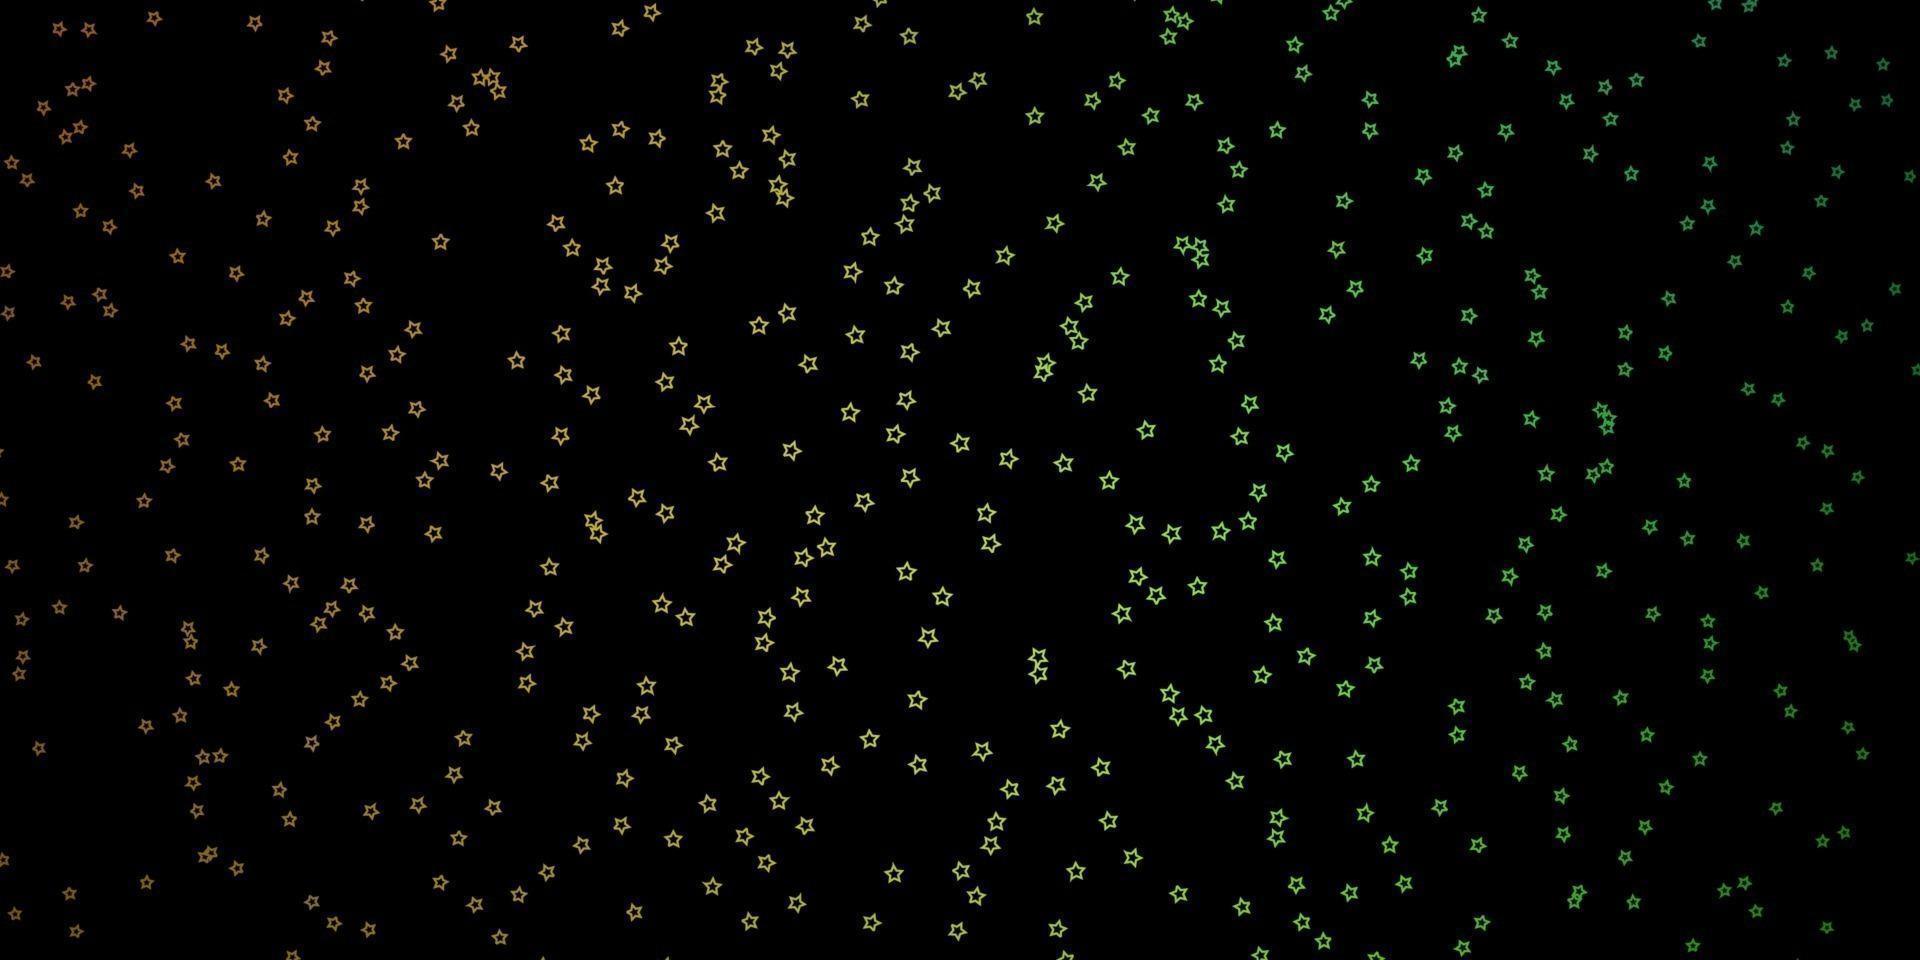 donkergroene, gele vectorlay-out met heldere sterren. vector